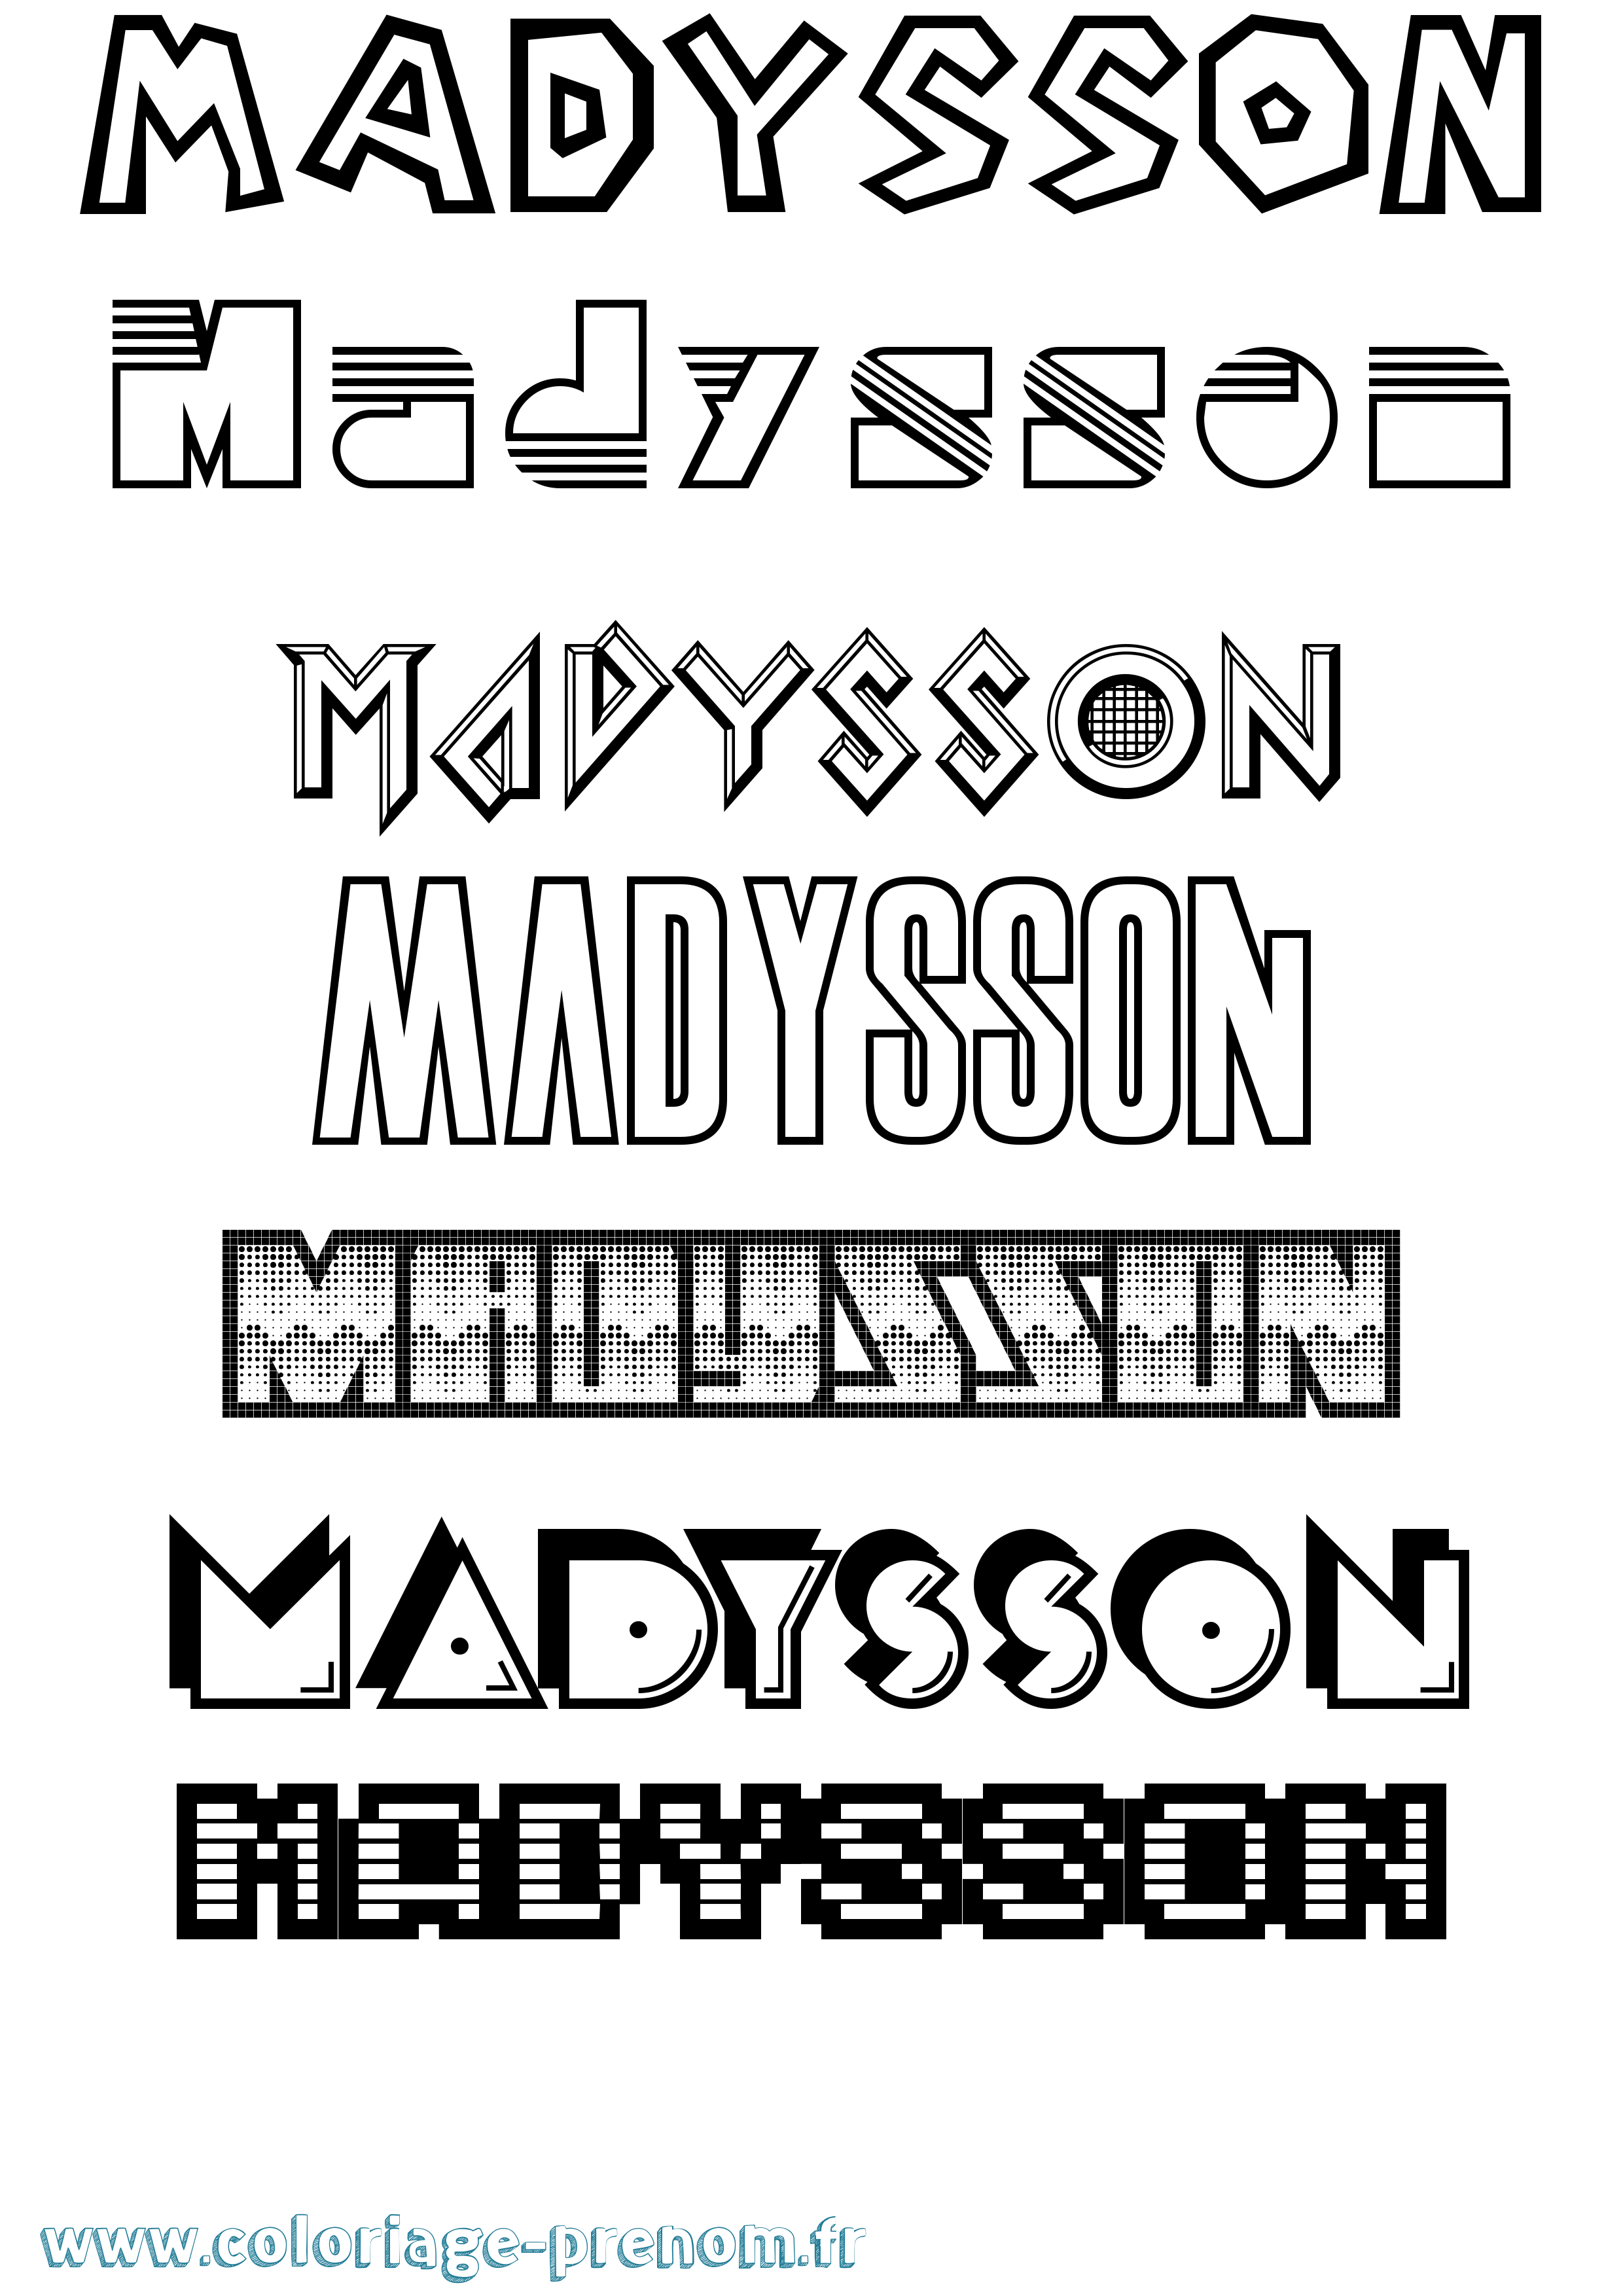 Coloriage prénom Madysson Jeux Vidéos